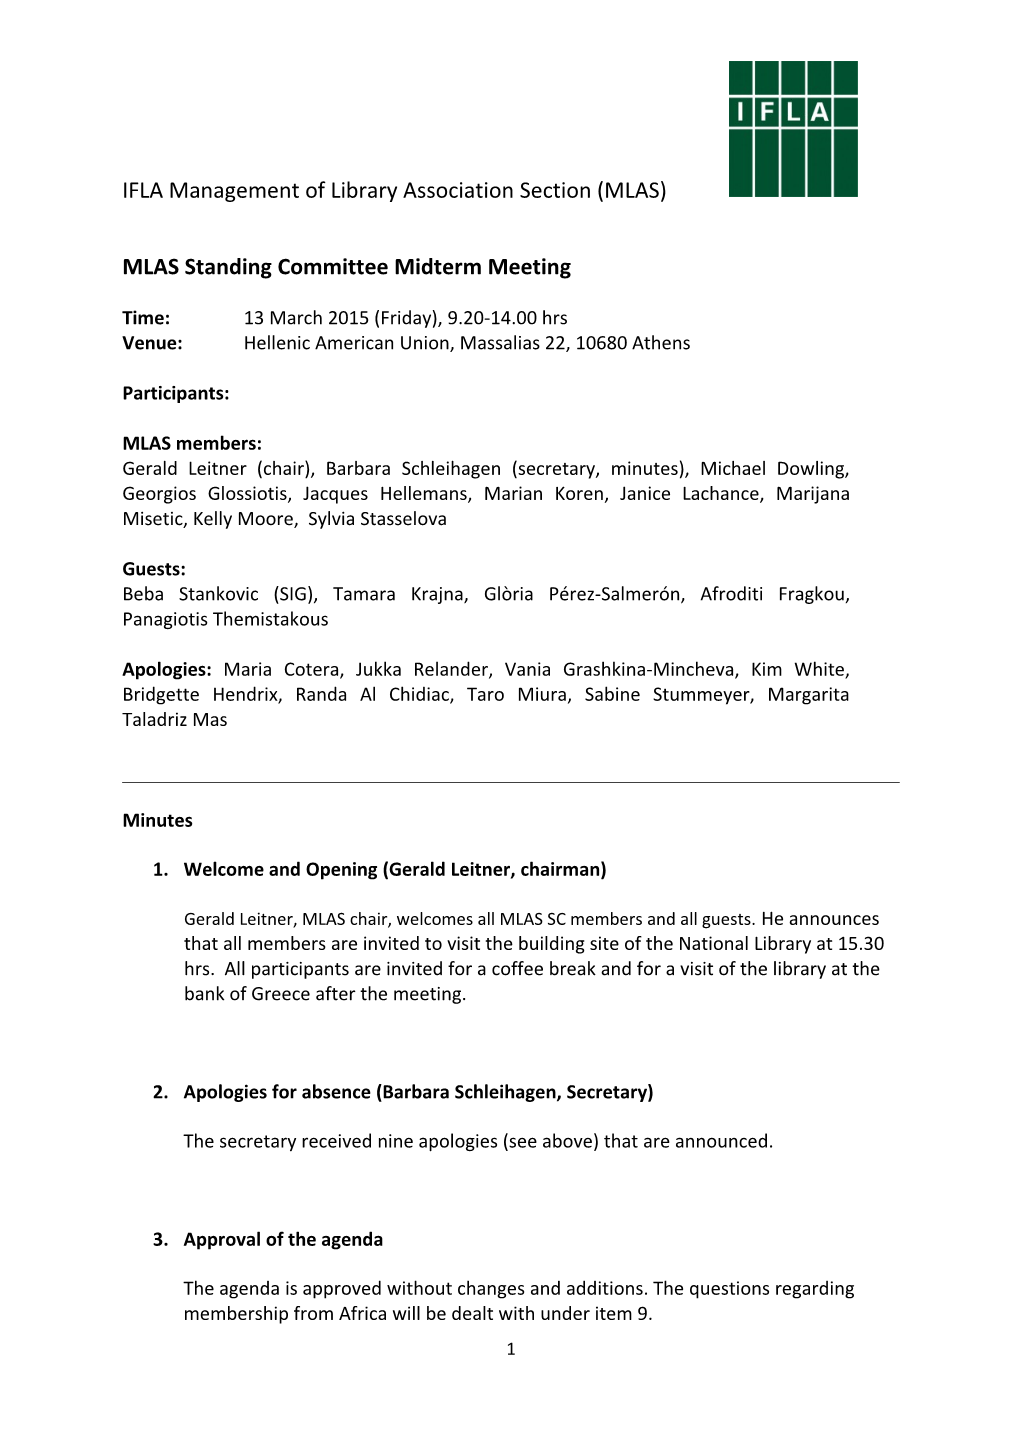 MLAS Standing Committee Midterm Meeting